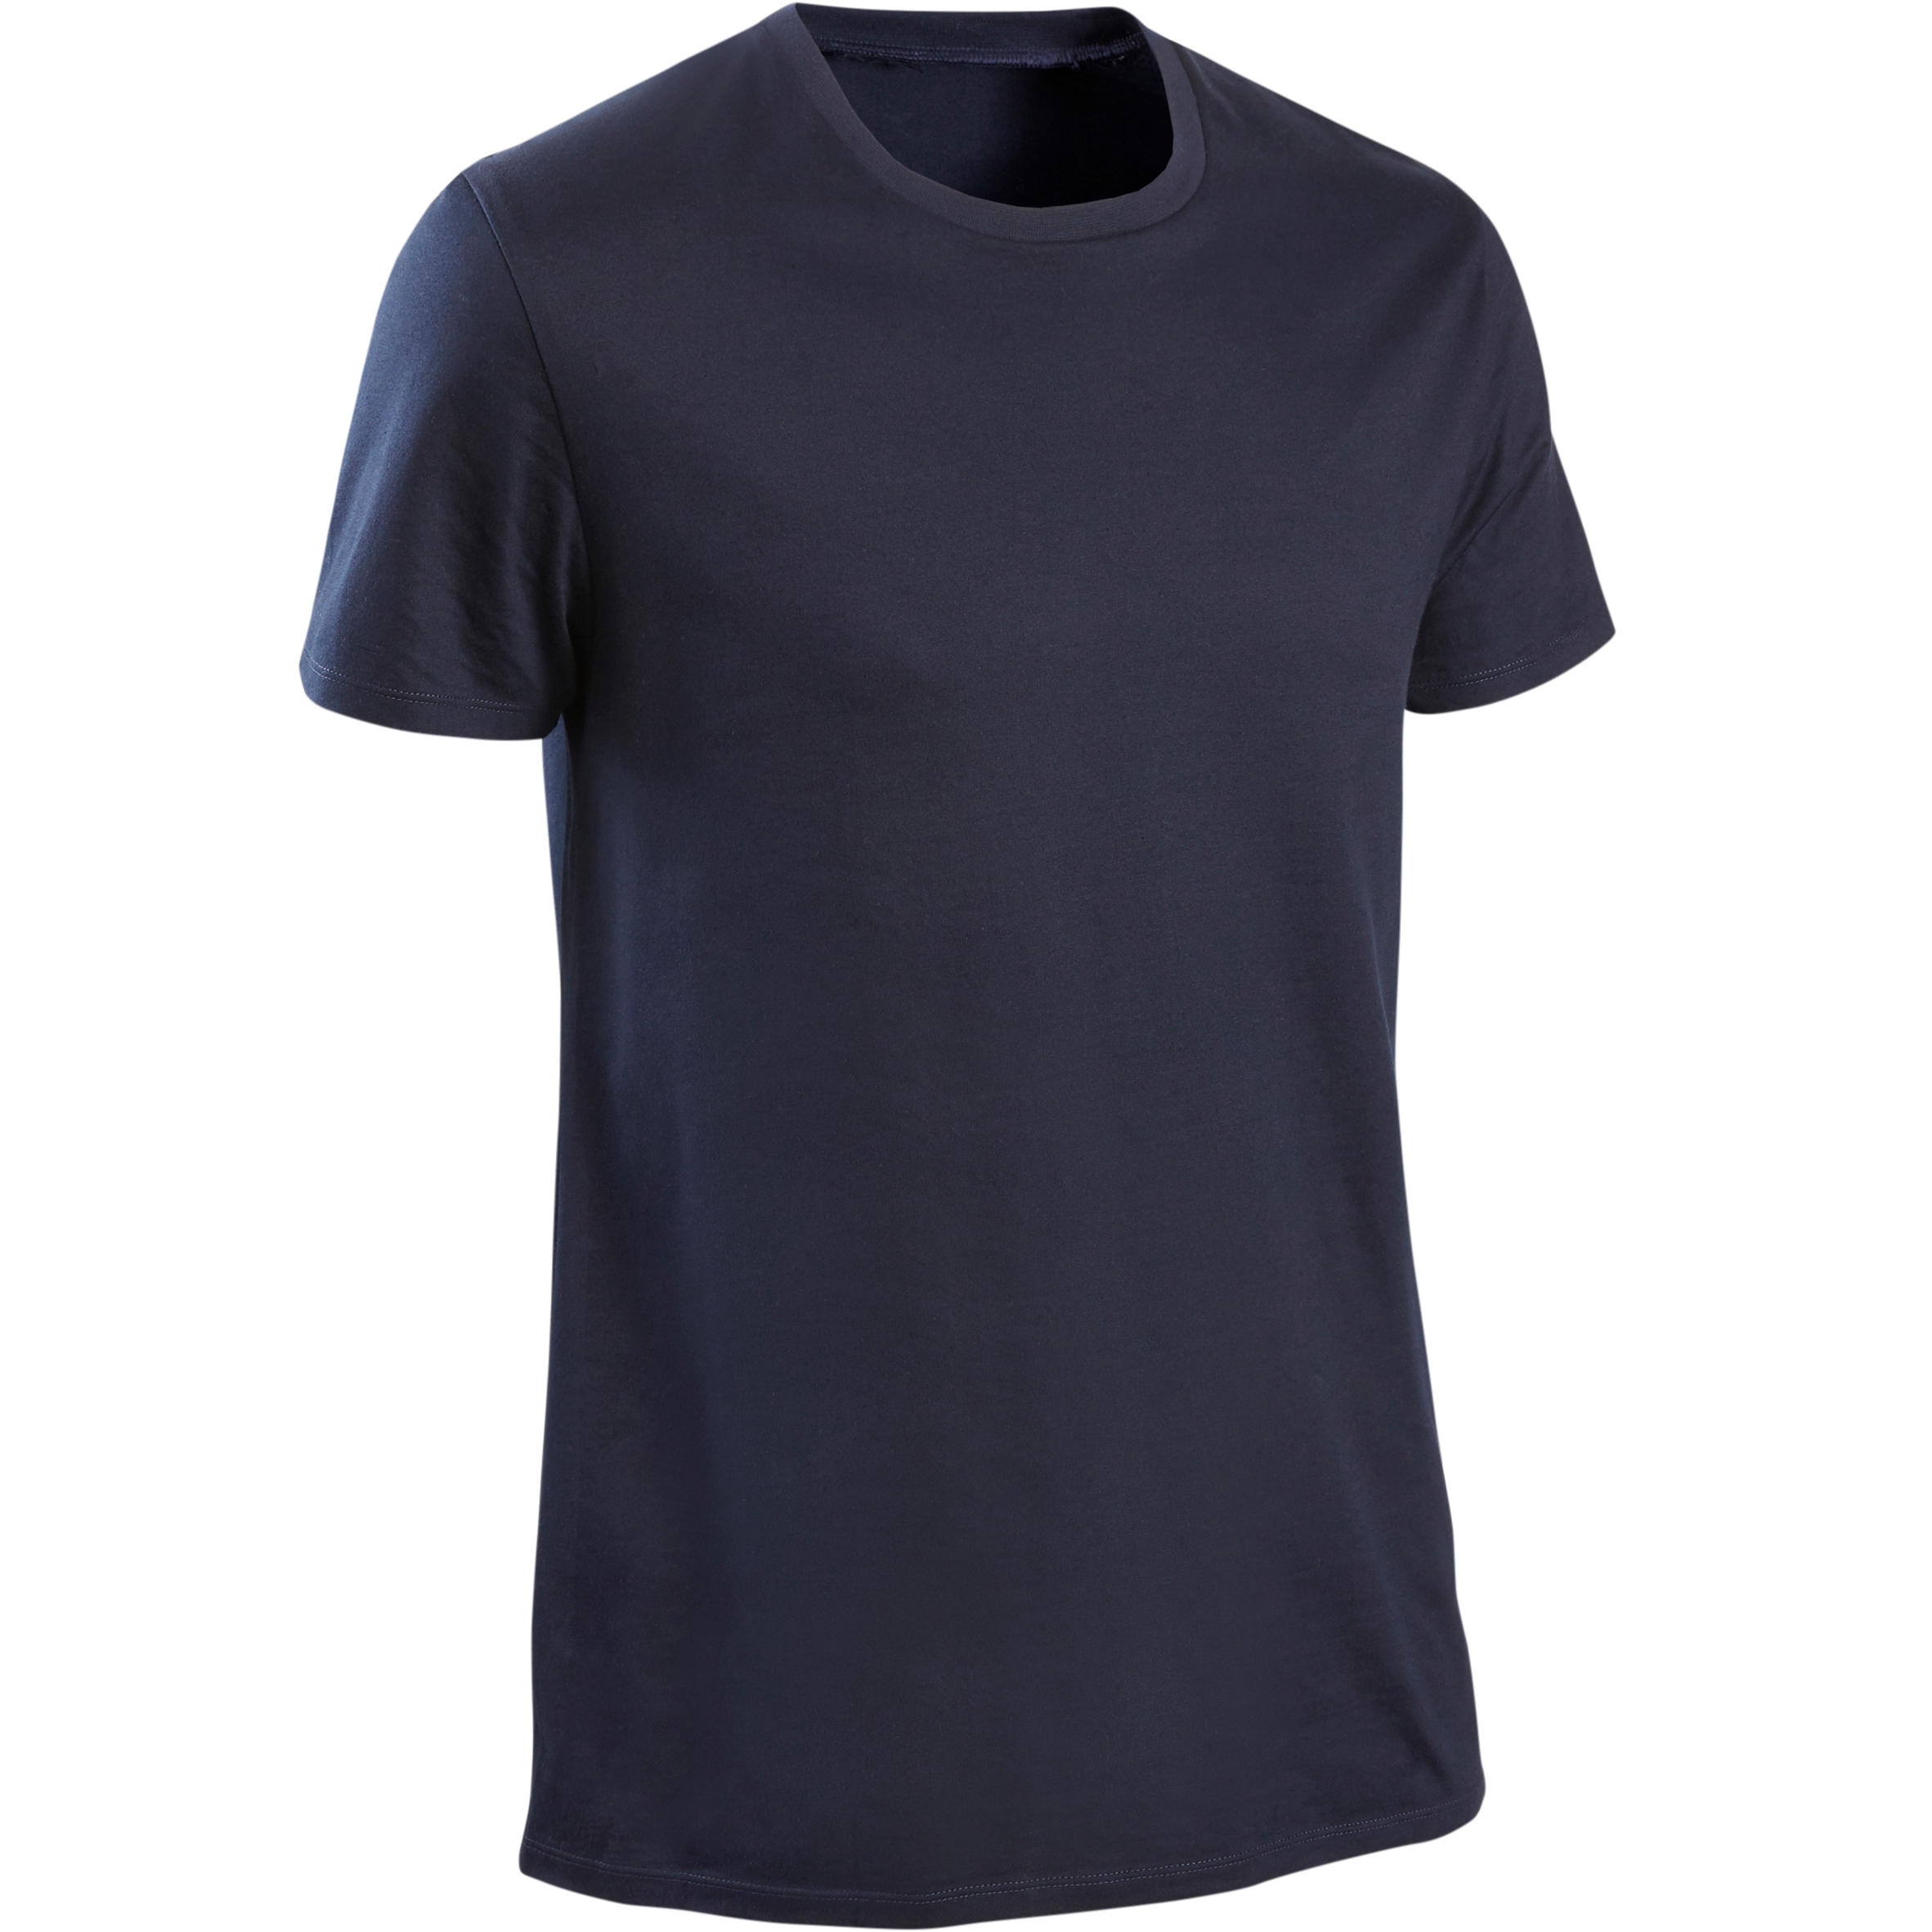 Men's Fitness T-Shirt Sportee 100 - Navy Blue 6/6